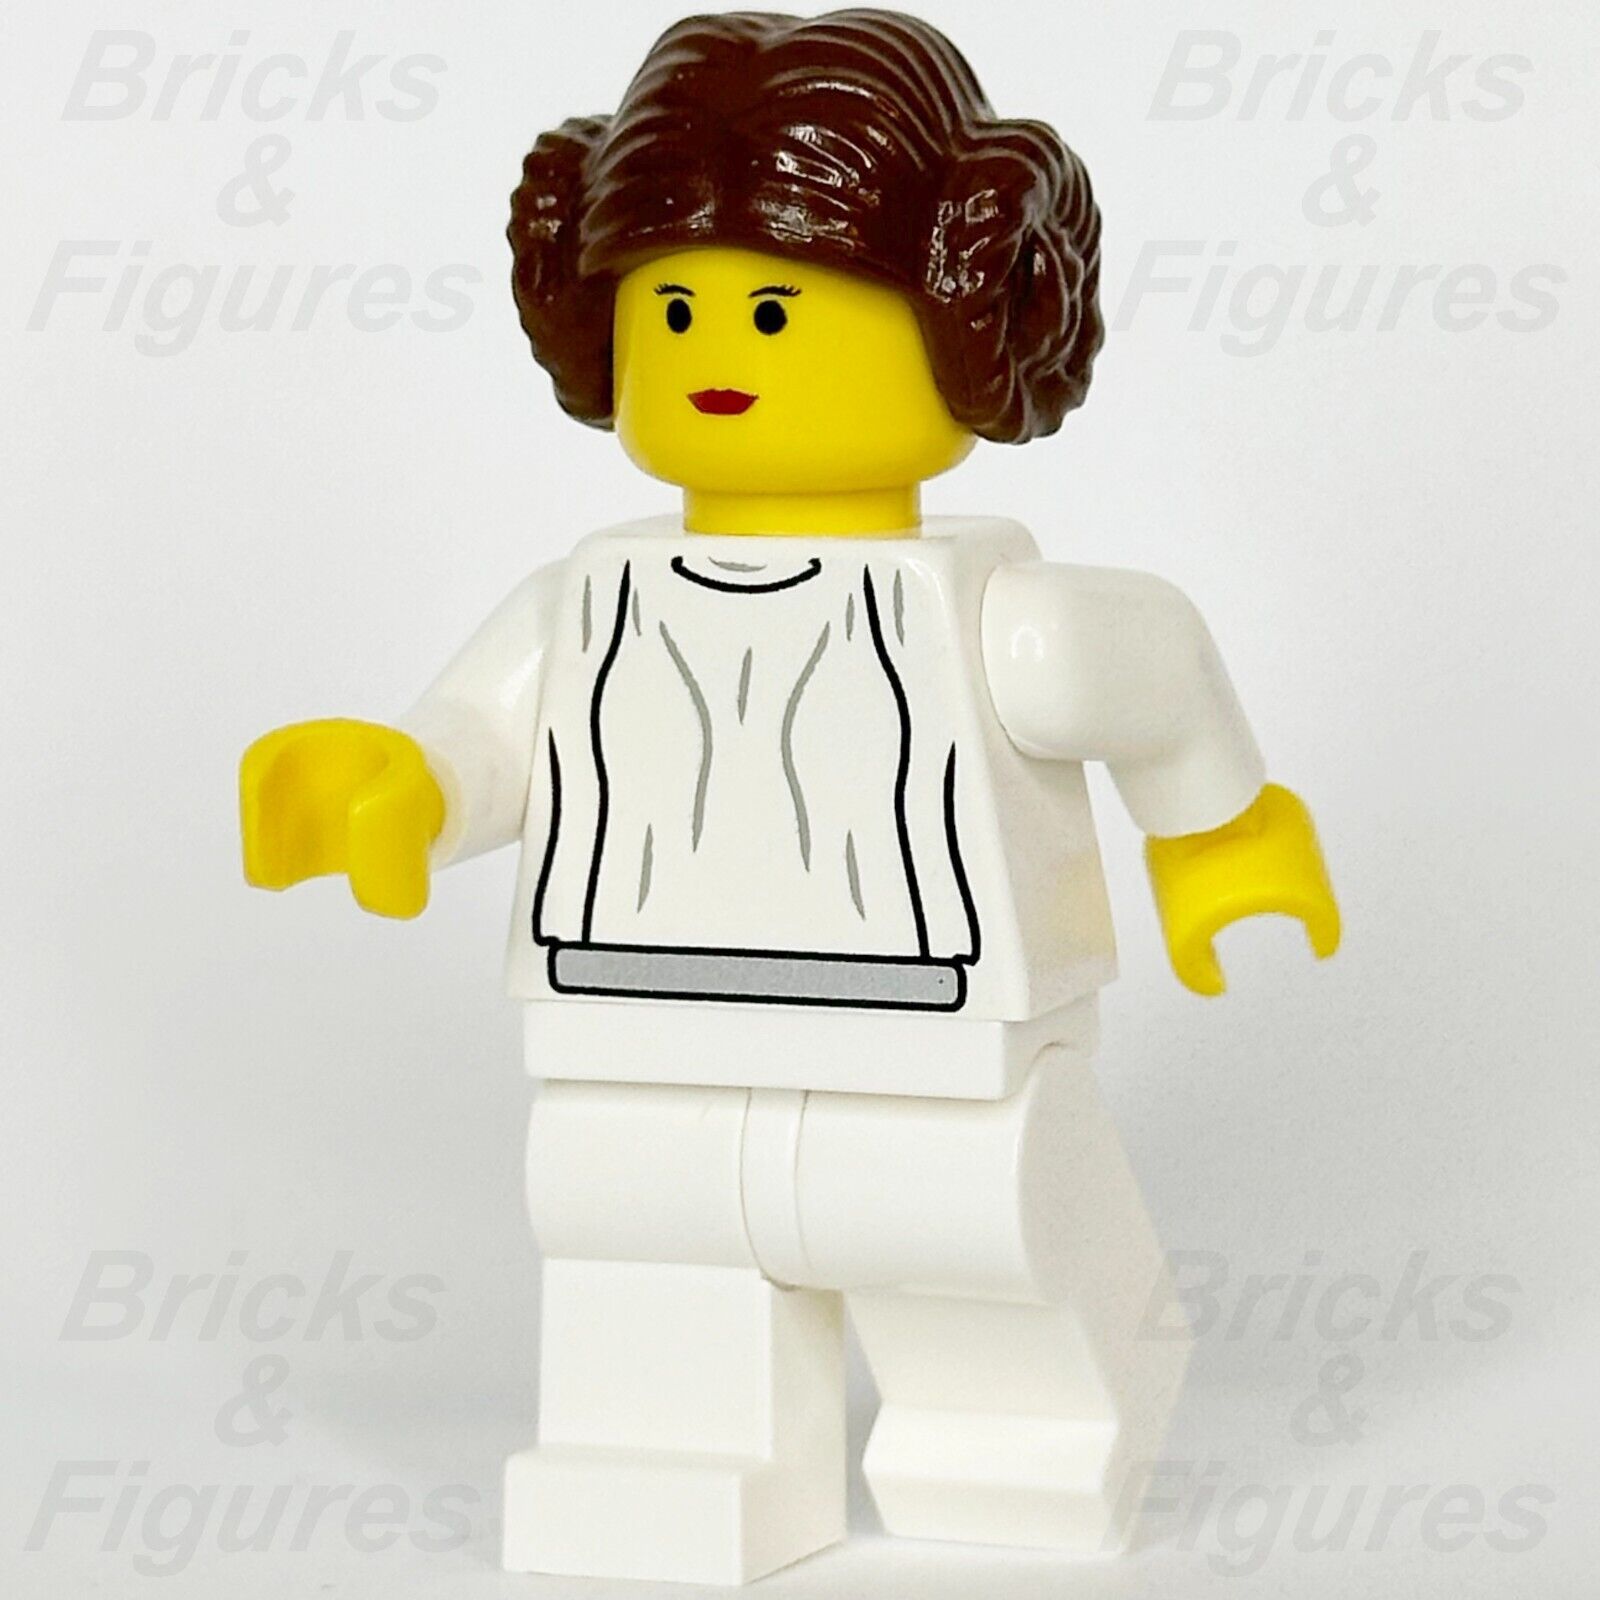 LEGO Star Wars Princess Leia Minifigure Episode 4/5/6 Yellow Skin 7190 sw0026 - Bricks & Figures